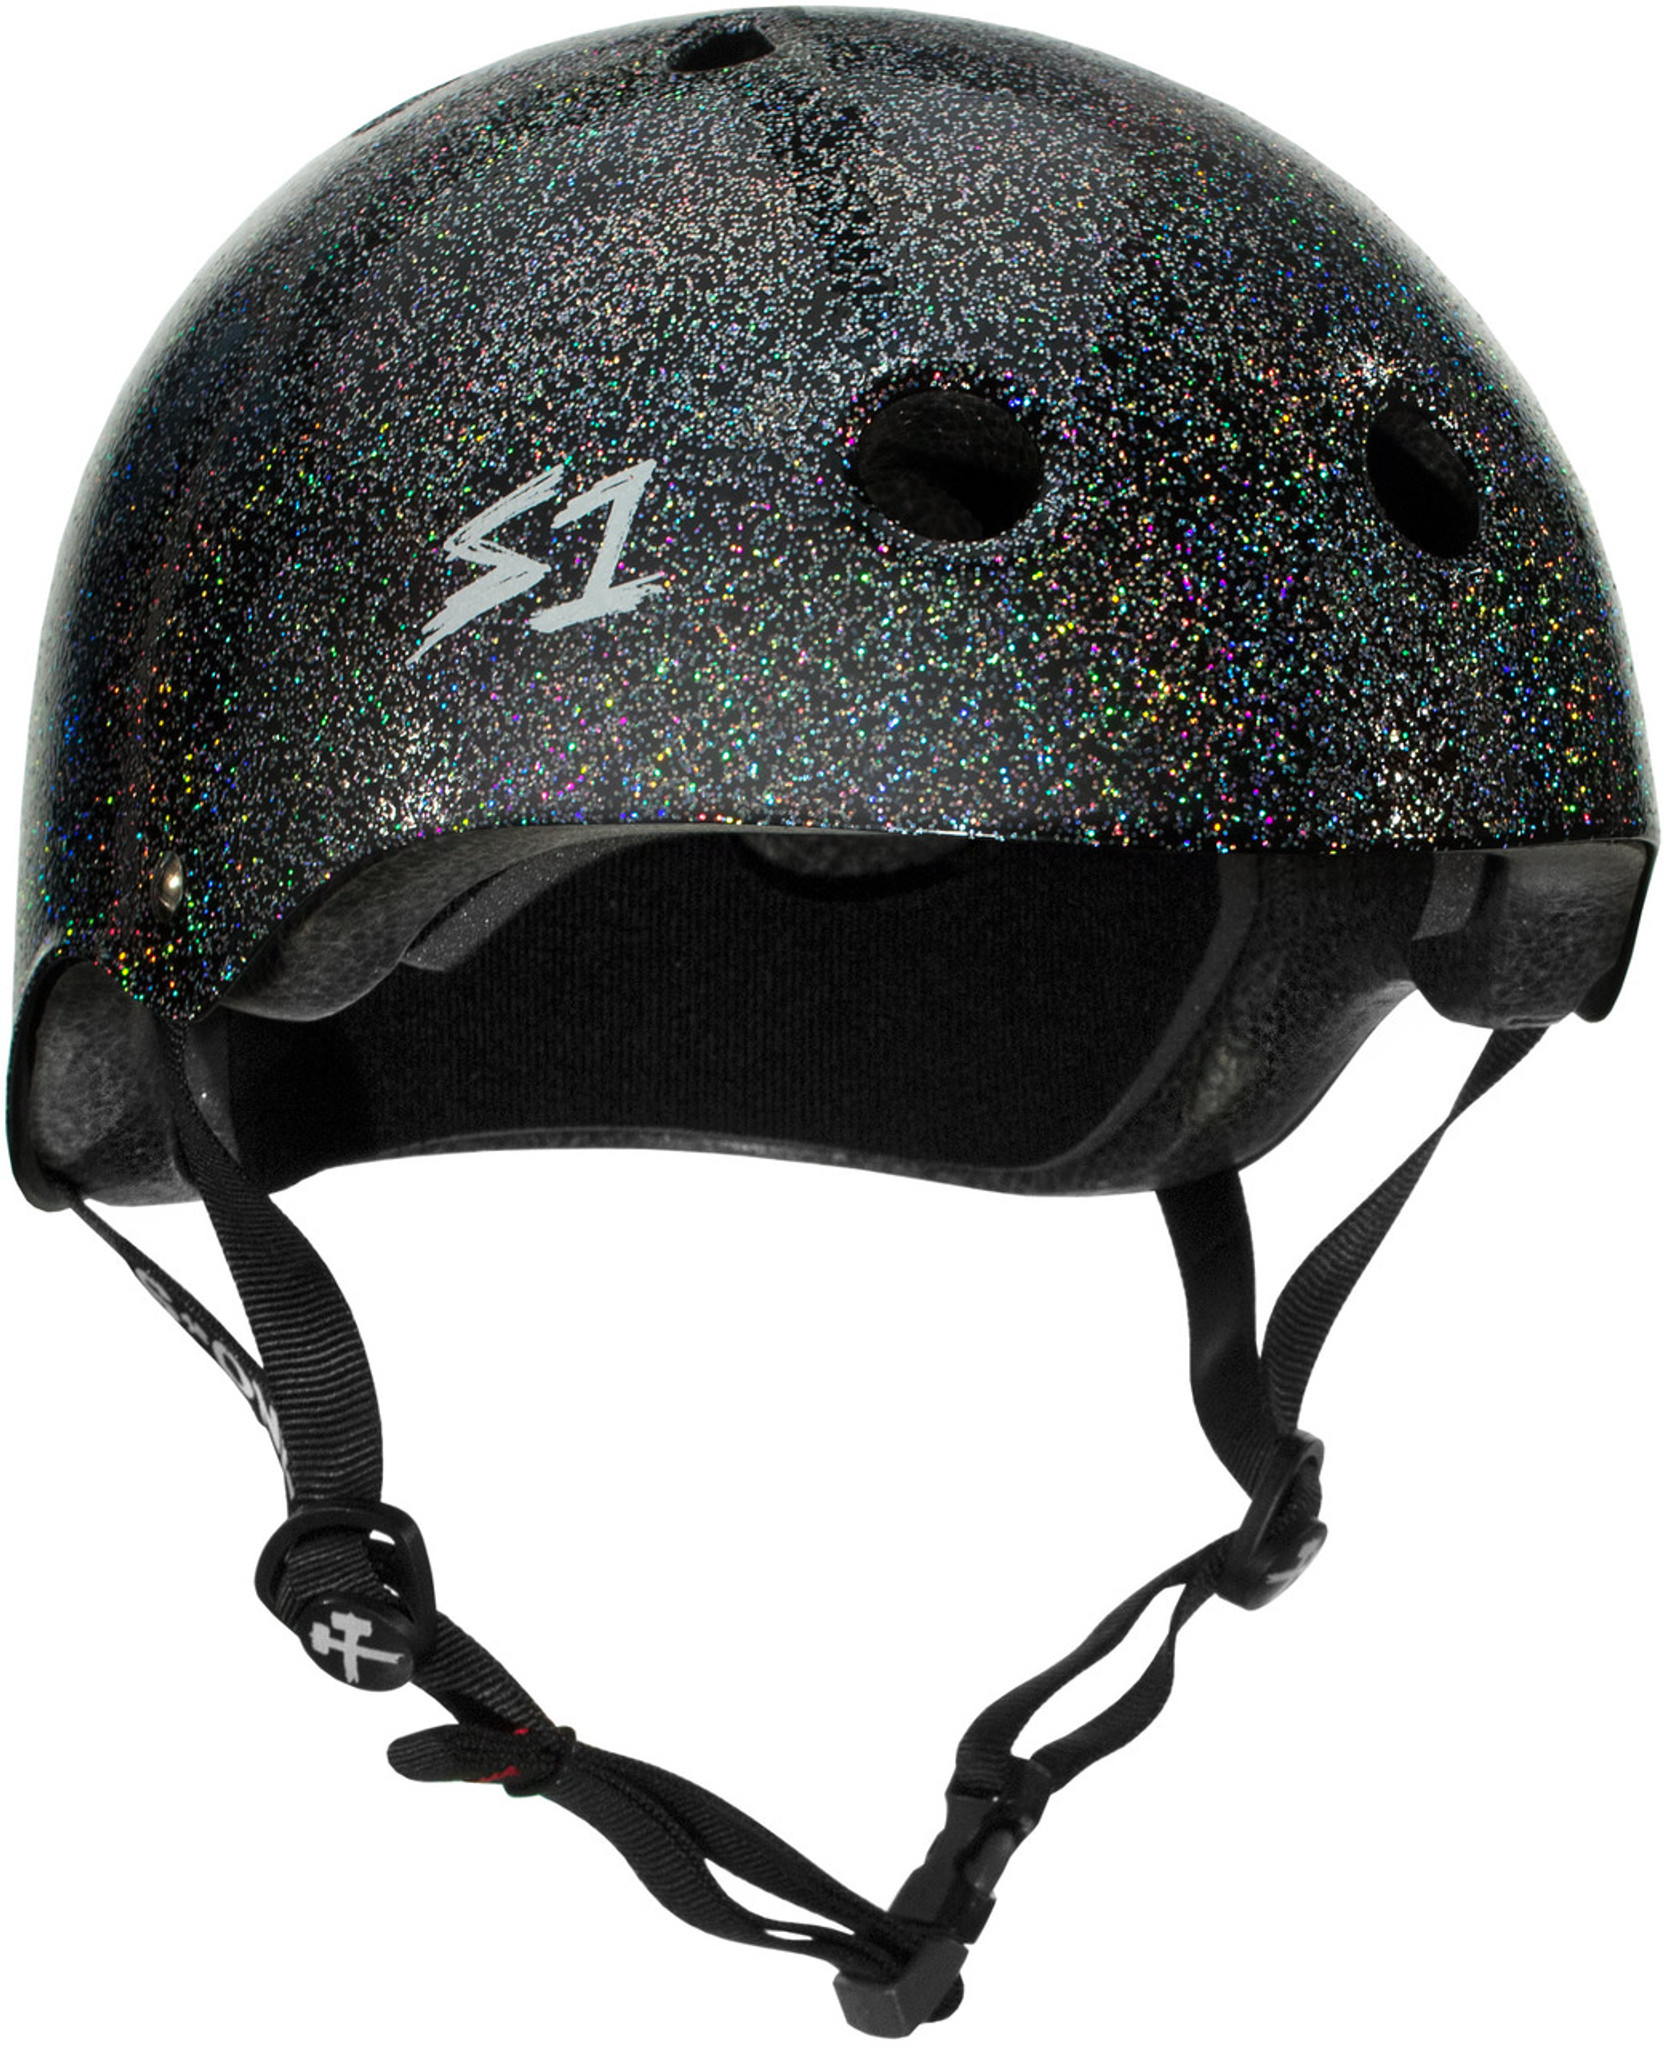 Prevail at styre pendul Black Glitter Helmet | Bicycle Helmet | Skate Helmet